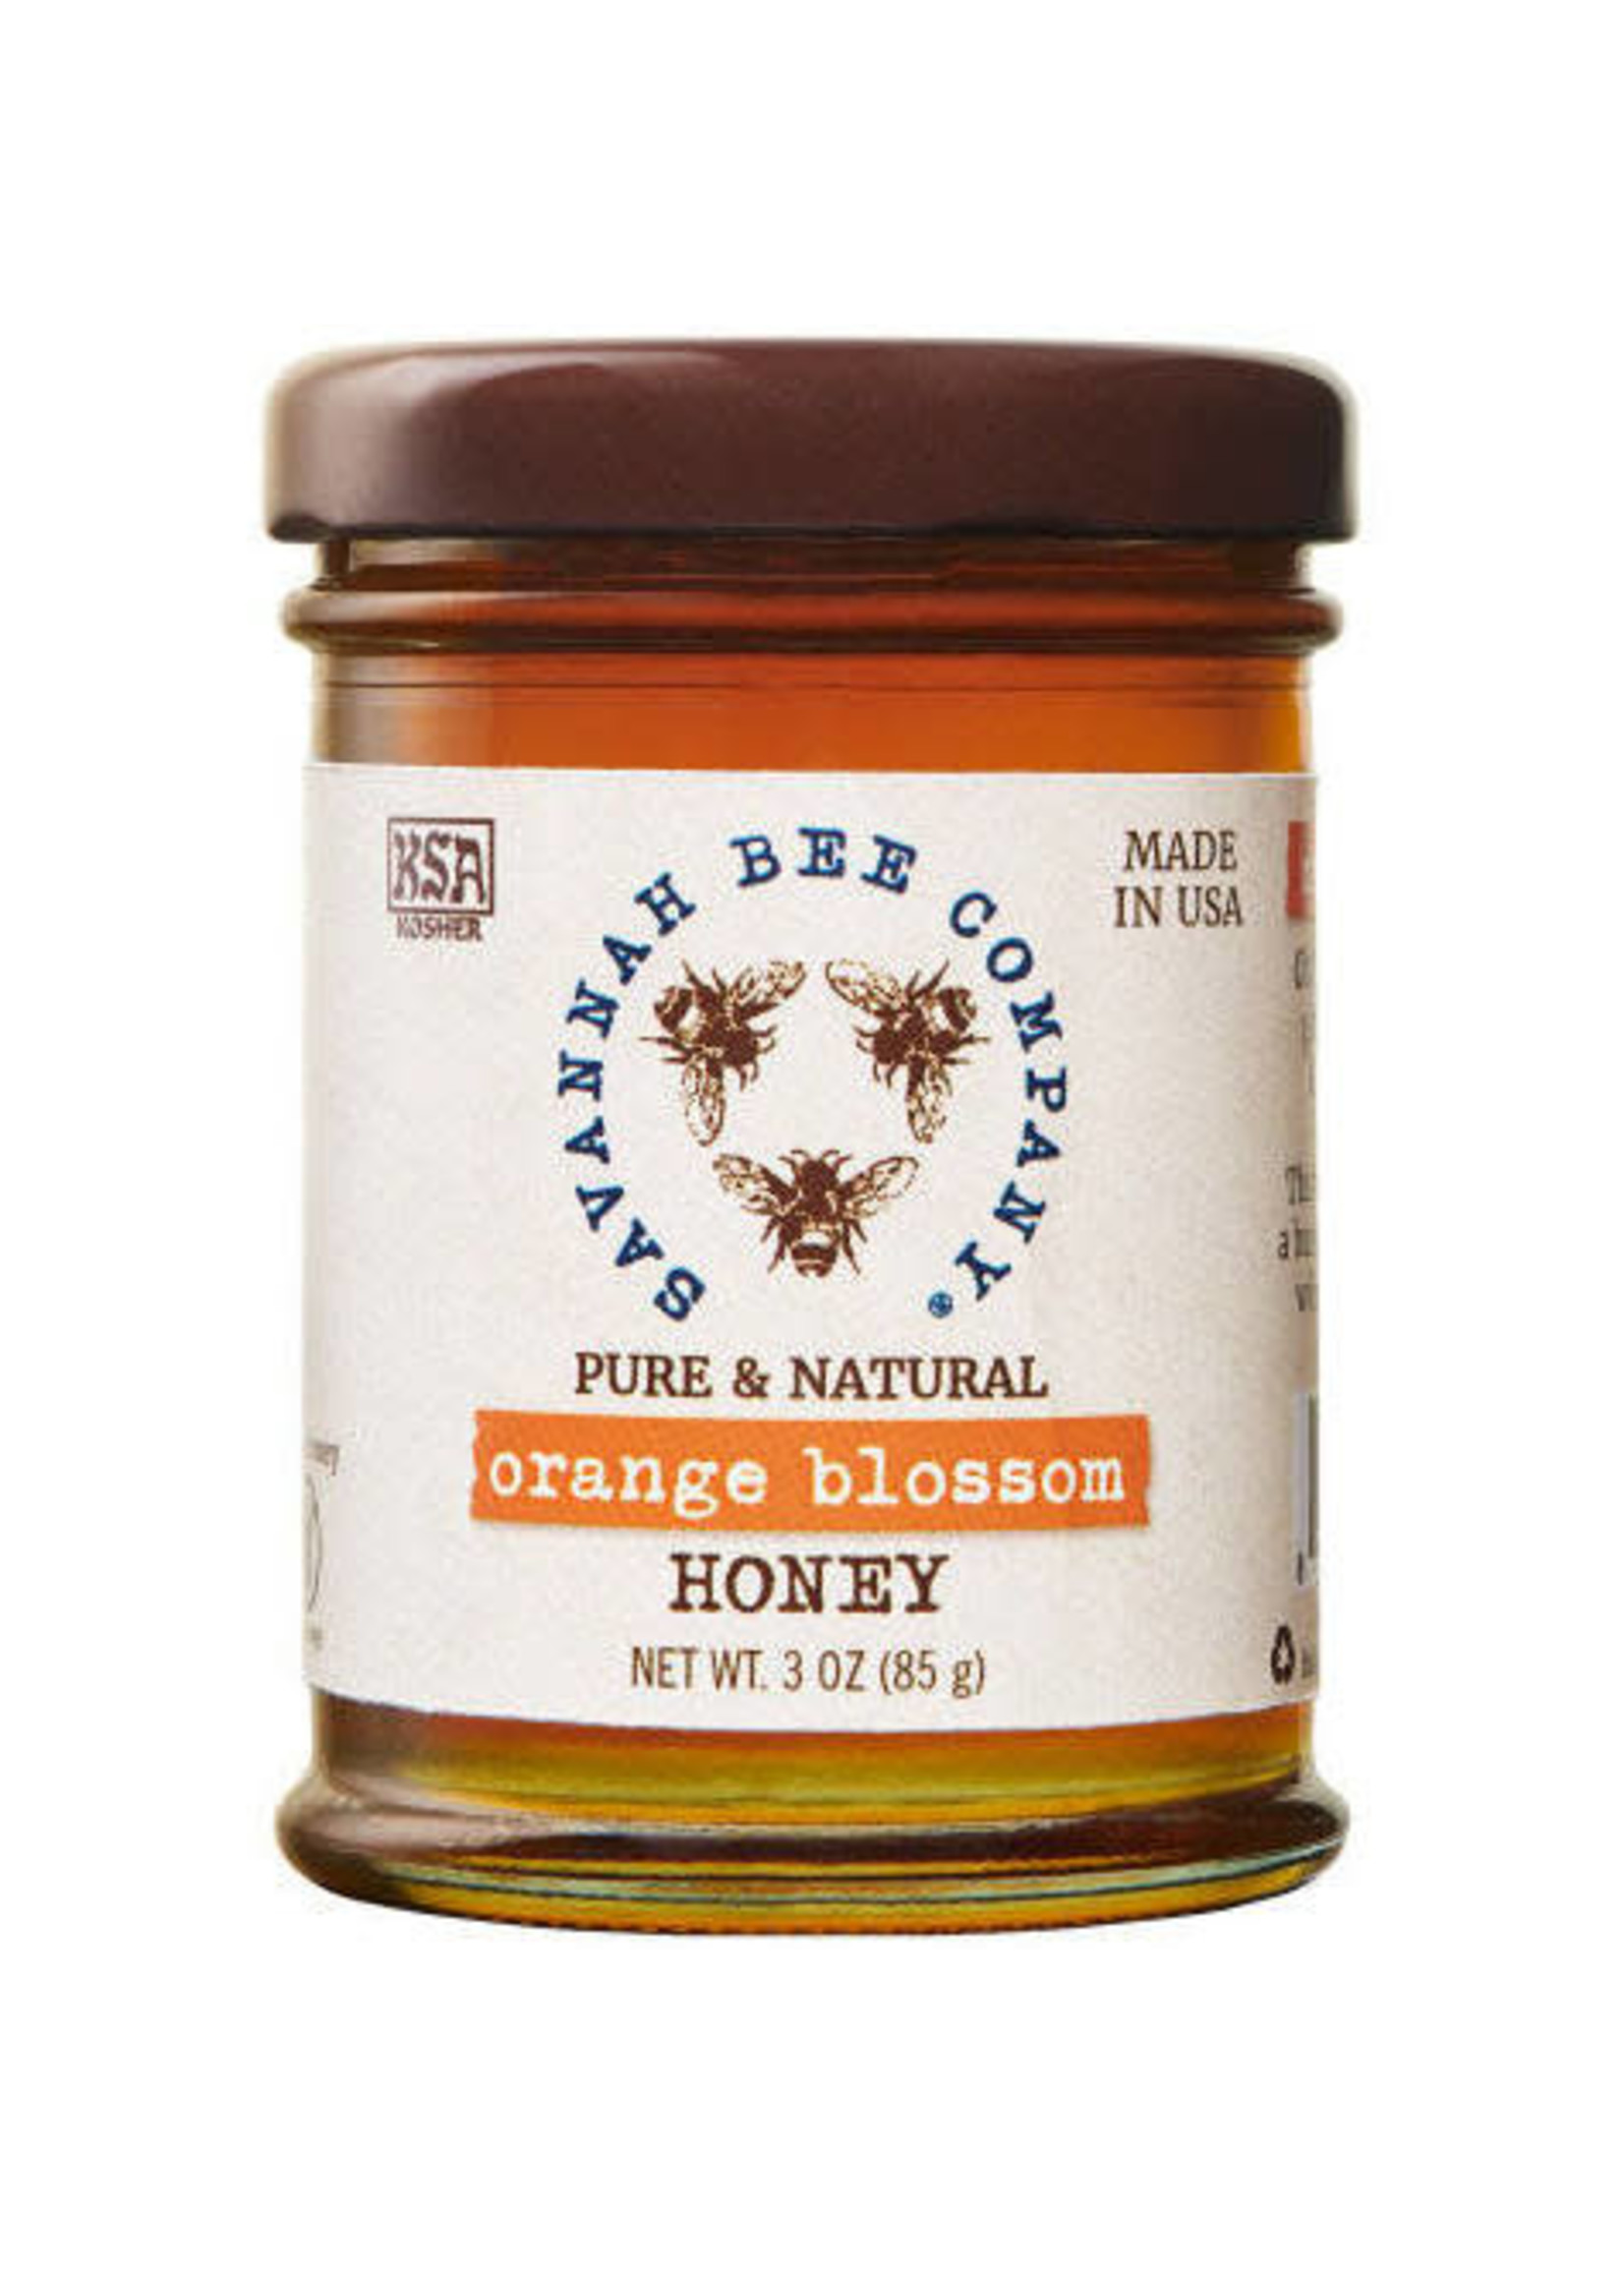 Savannah Bee Company Artisanal Honey Sampler- 3oz Tupelo Orange Blossom Acacia